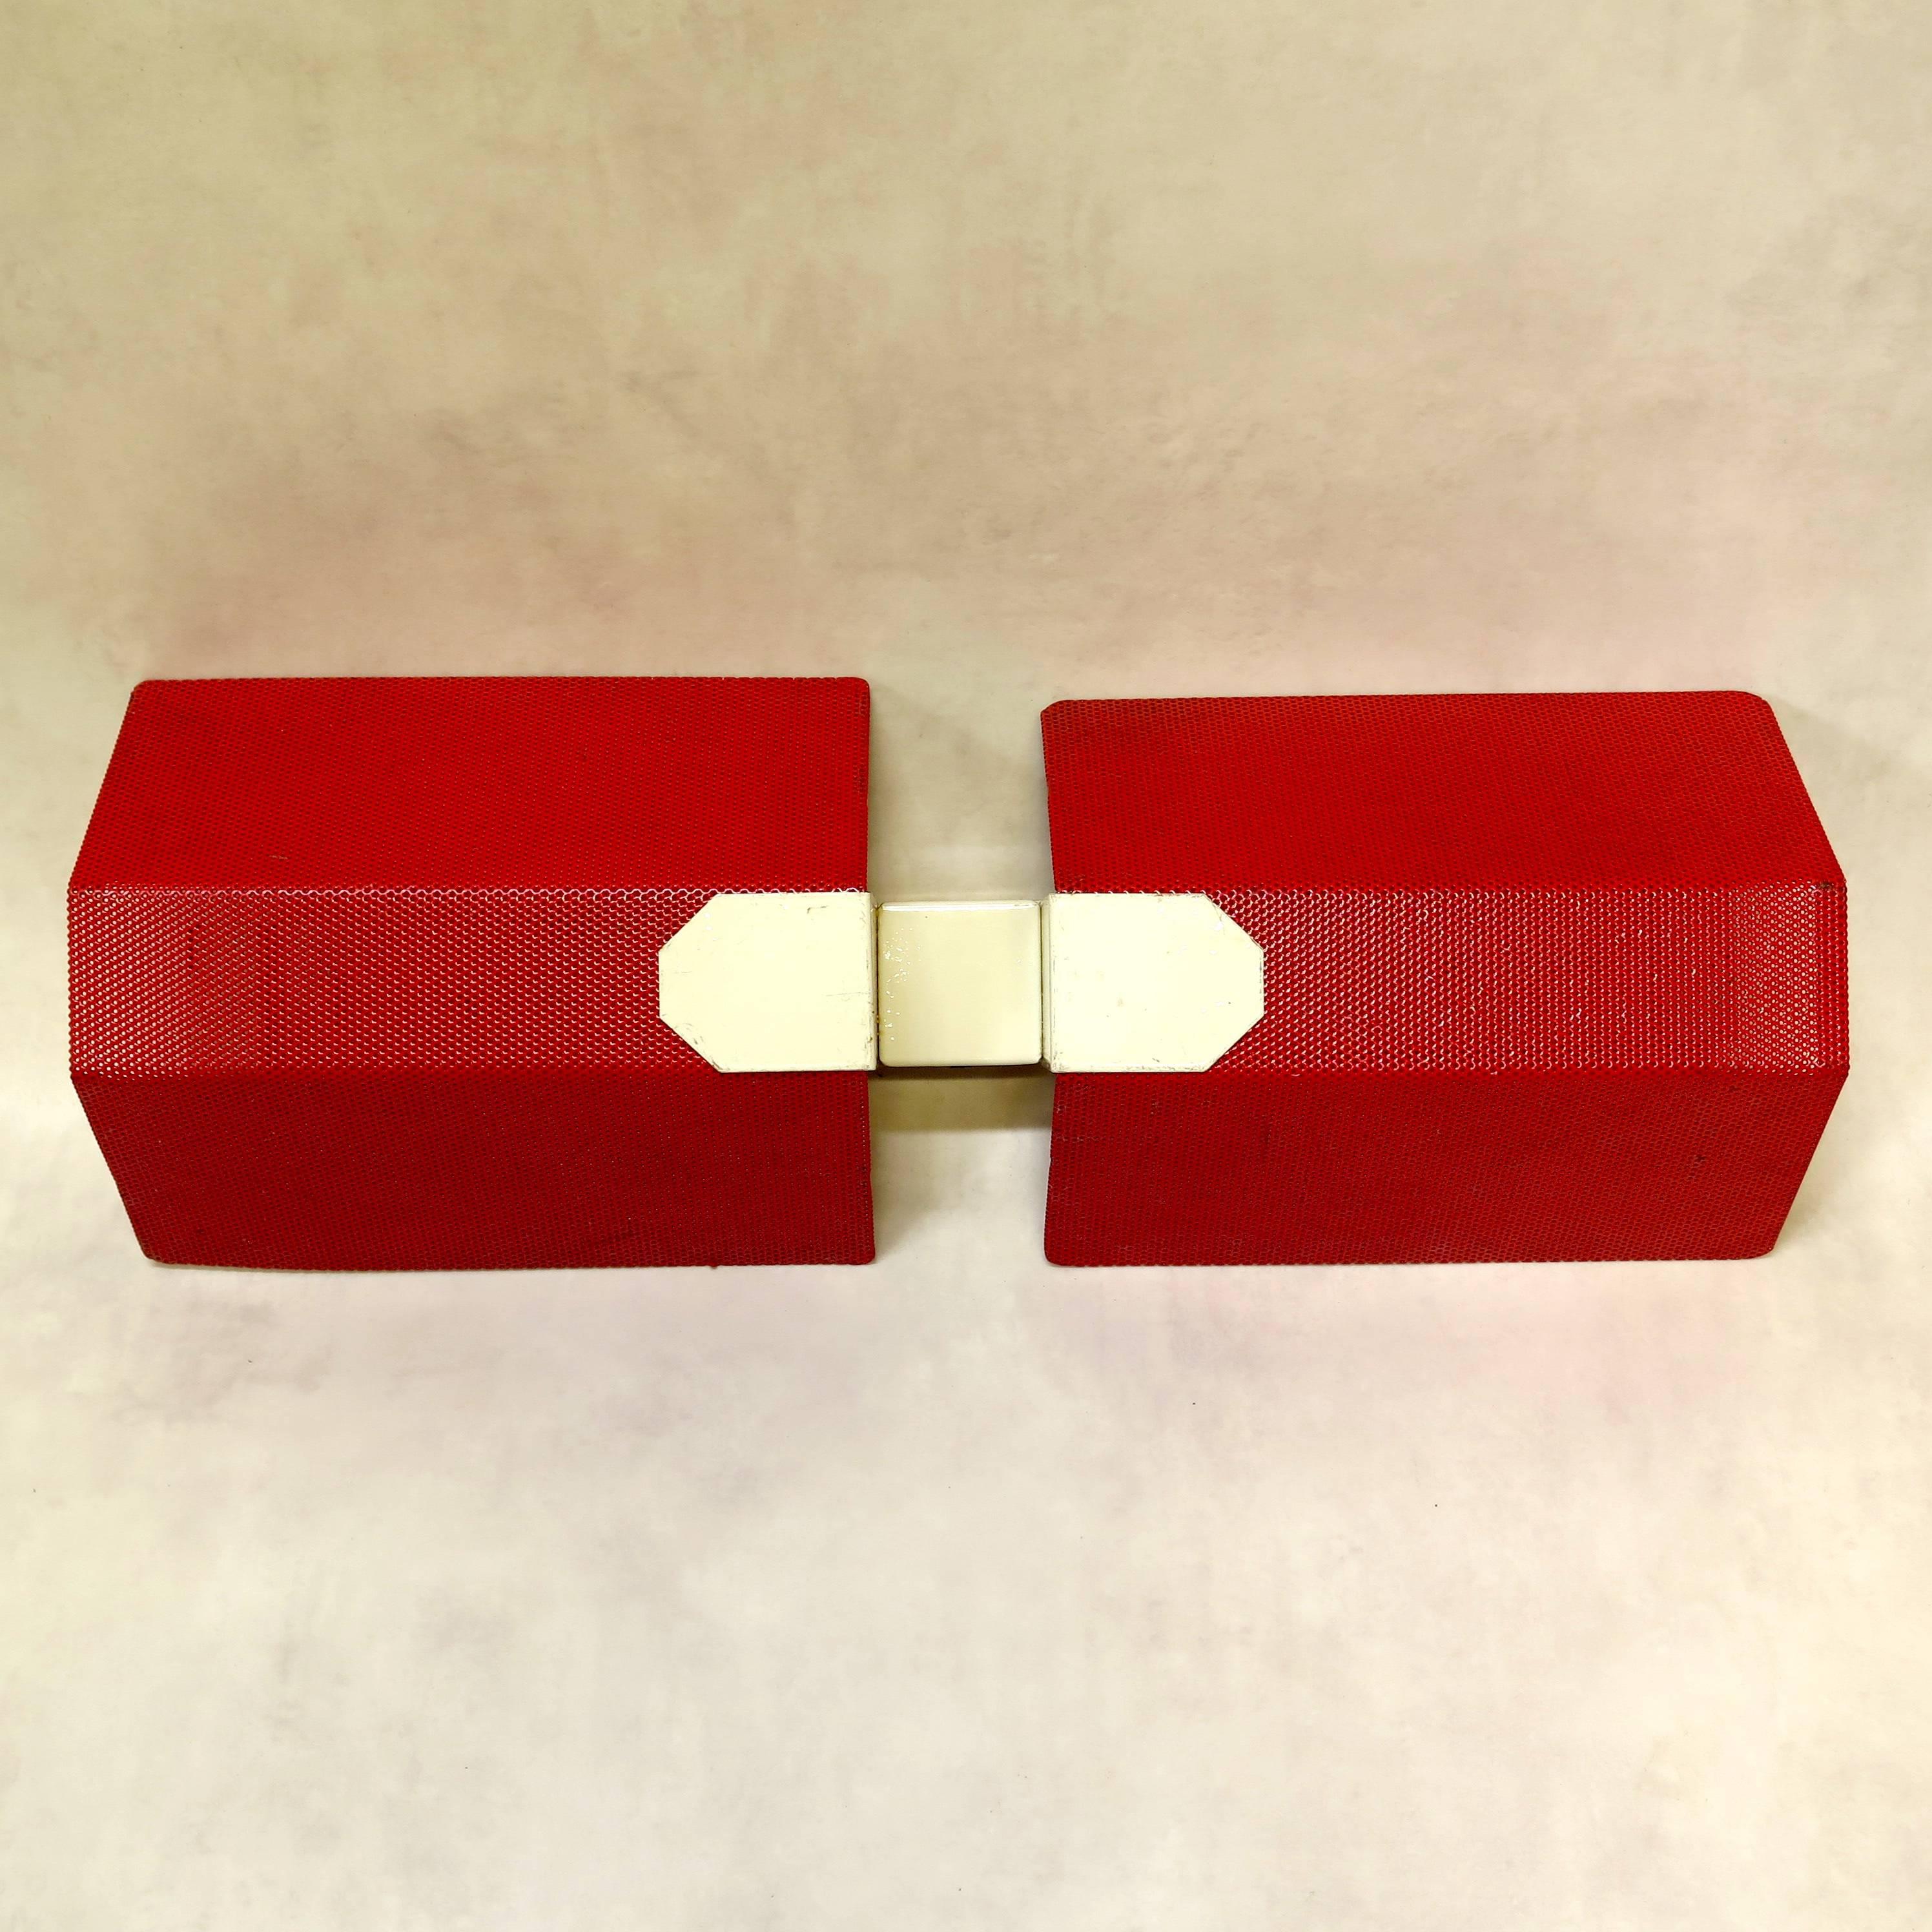 Fabuleux ensemble de neuf appliques laquées rouge et blanc cassé dans le style de Mathieu Matégot. Chaque applique contient deux ampoules, une pour le haut et une pour le bas. Peut également être utilisé horizontalement. 

Belle conception